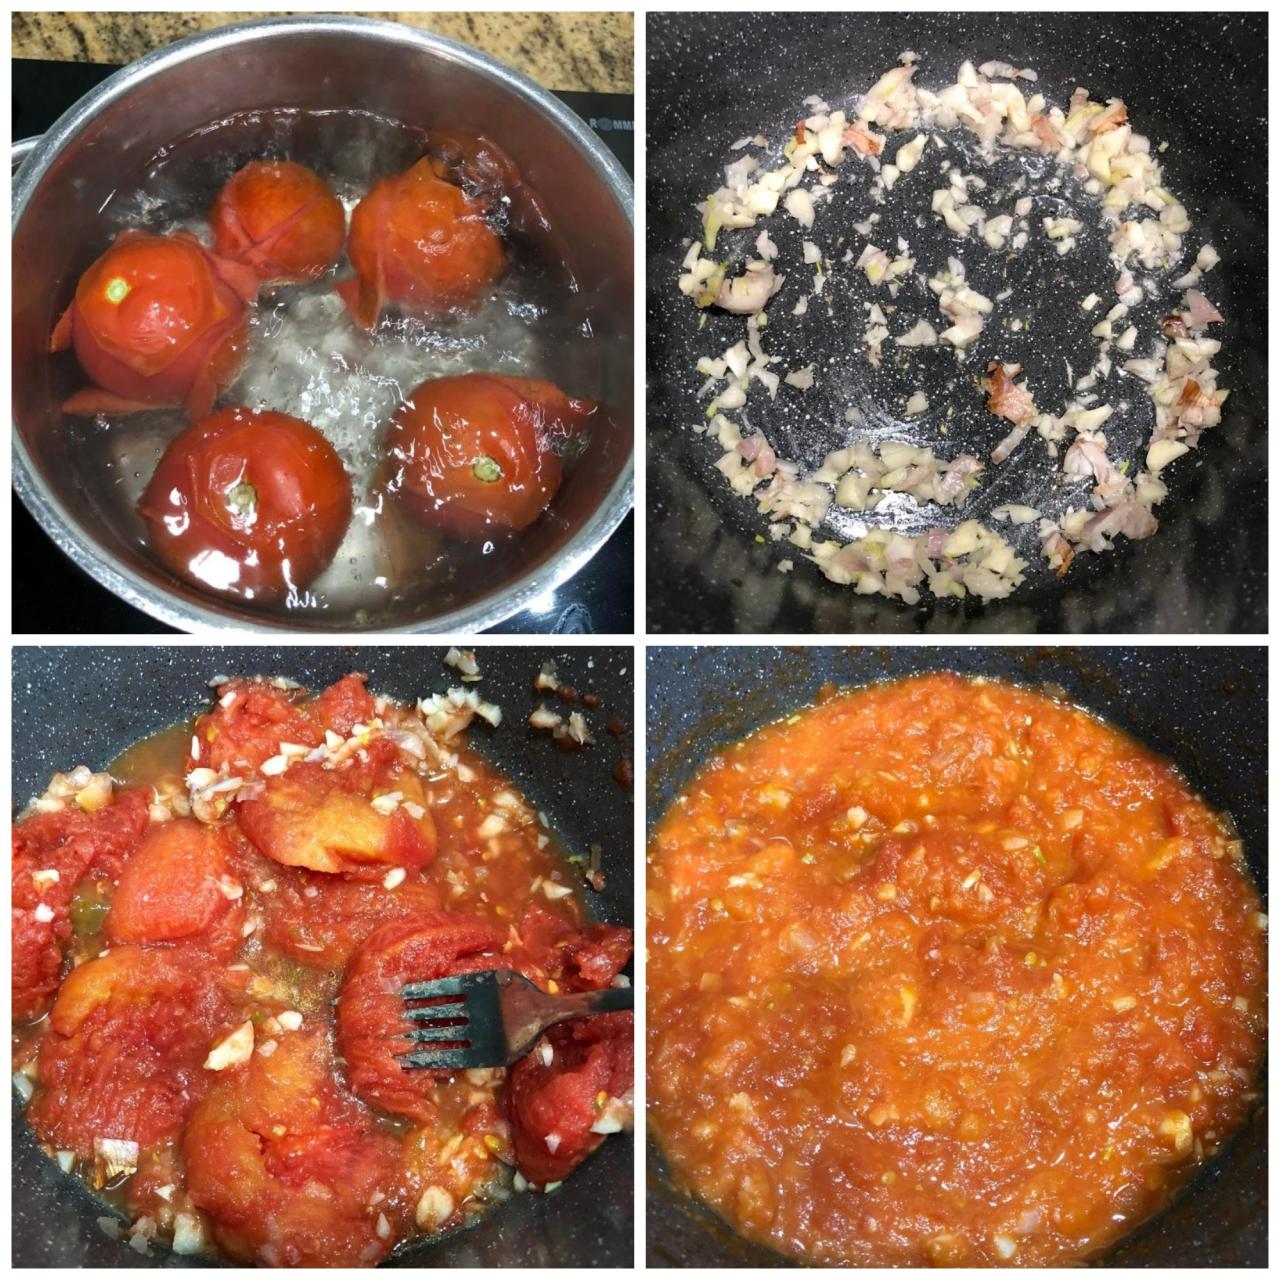 Chuẩn bị và sơ chế nguyên liệu tạo thành phẩm nước sốt cà chua